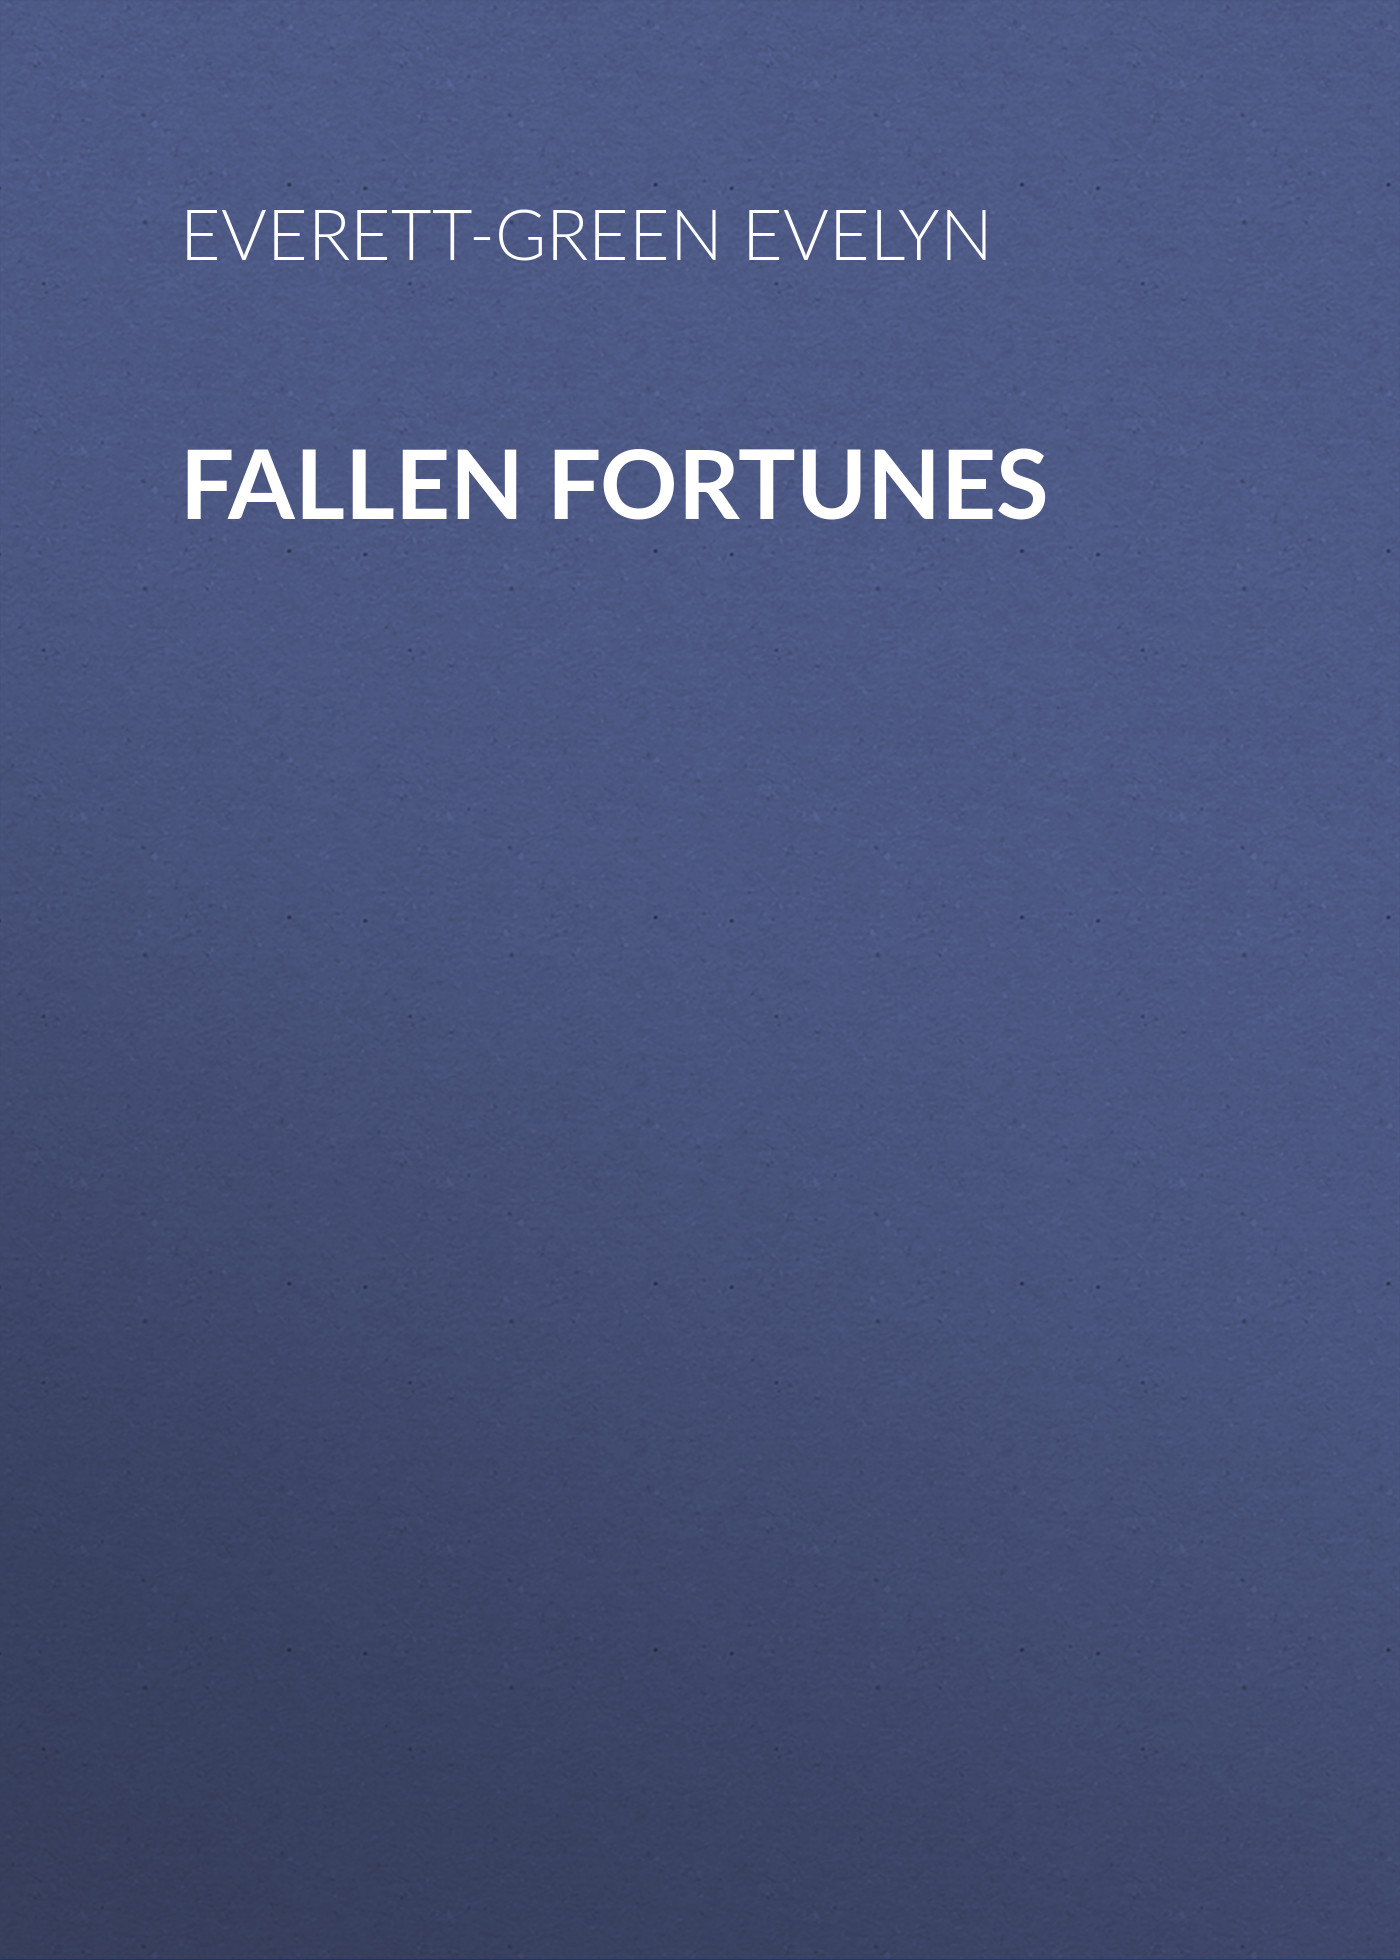 Книга Fallen Fortunes из серии , созданная Evelyn Everett-Green, может относится к жанру Зарубежная старинная литература, Зарубежная классика. Стоимость электронной книги Fallen Fortunes с идентификатором 24713737 составляет 0 руб.